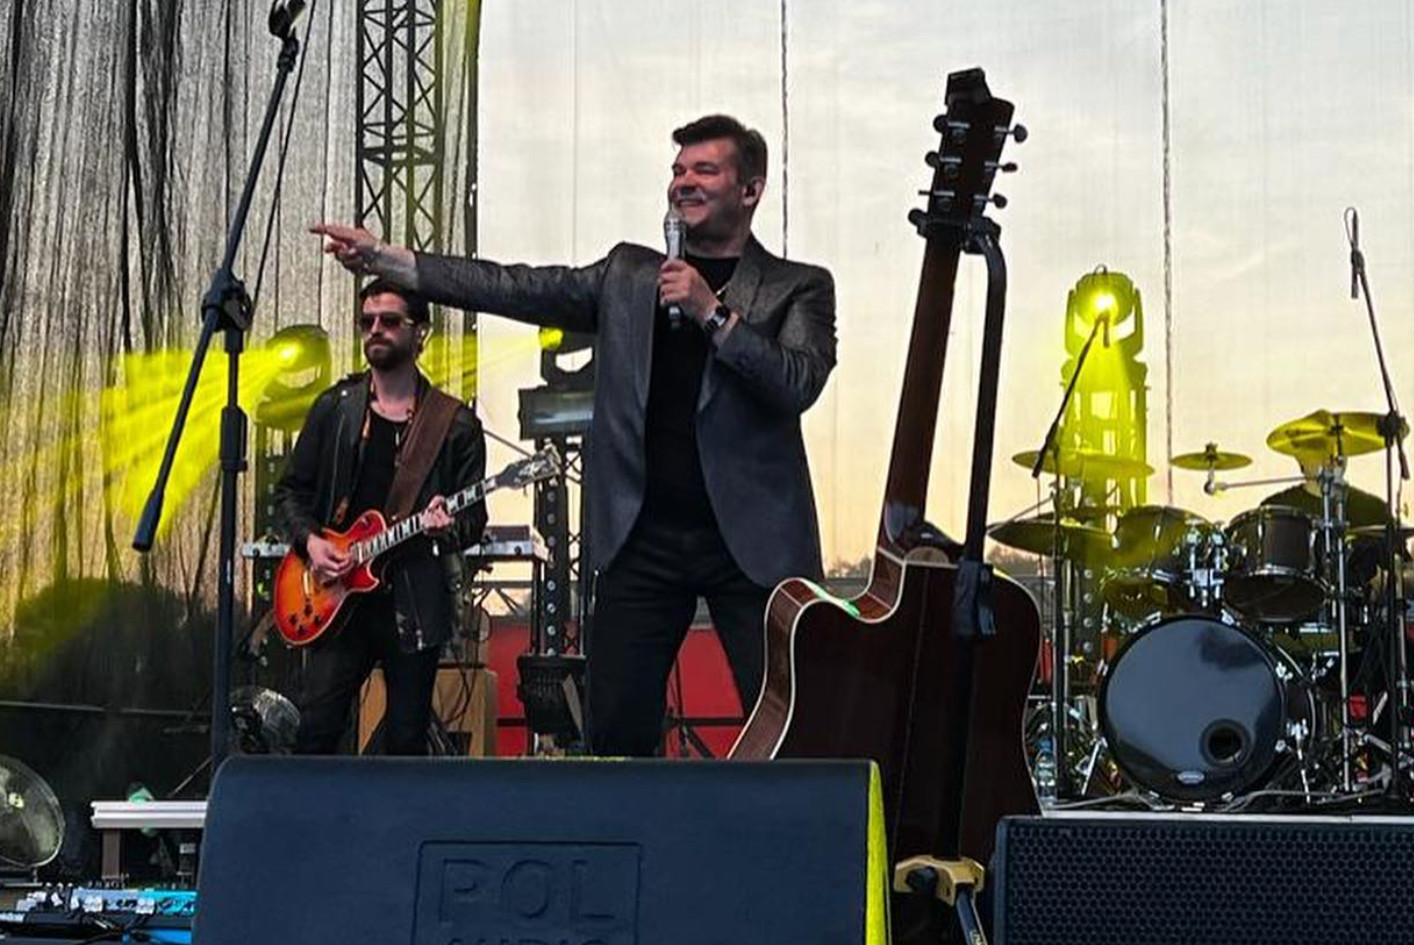 Król disco polo wzbudził zachwyt podczas niesamowitego koncertu w Mogielnicy! Zenon Martyniuk dał czadu!